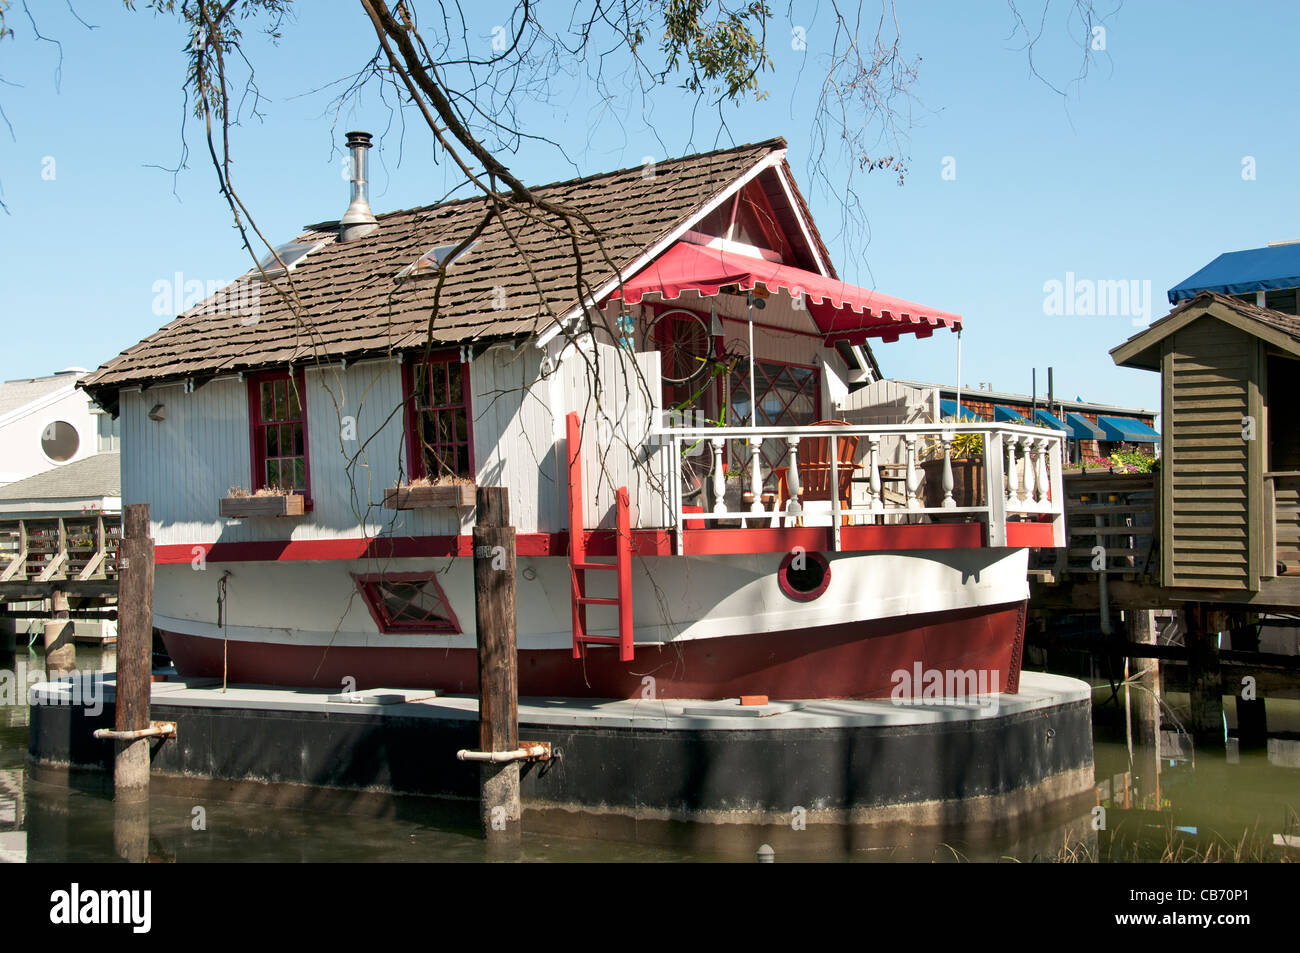 Die Sausalito Hausboot Gemeinde San Francisco Bay California Vereinigte Staaten von Amerika Stockfoto